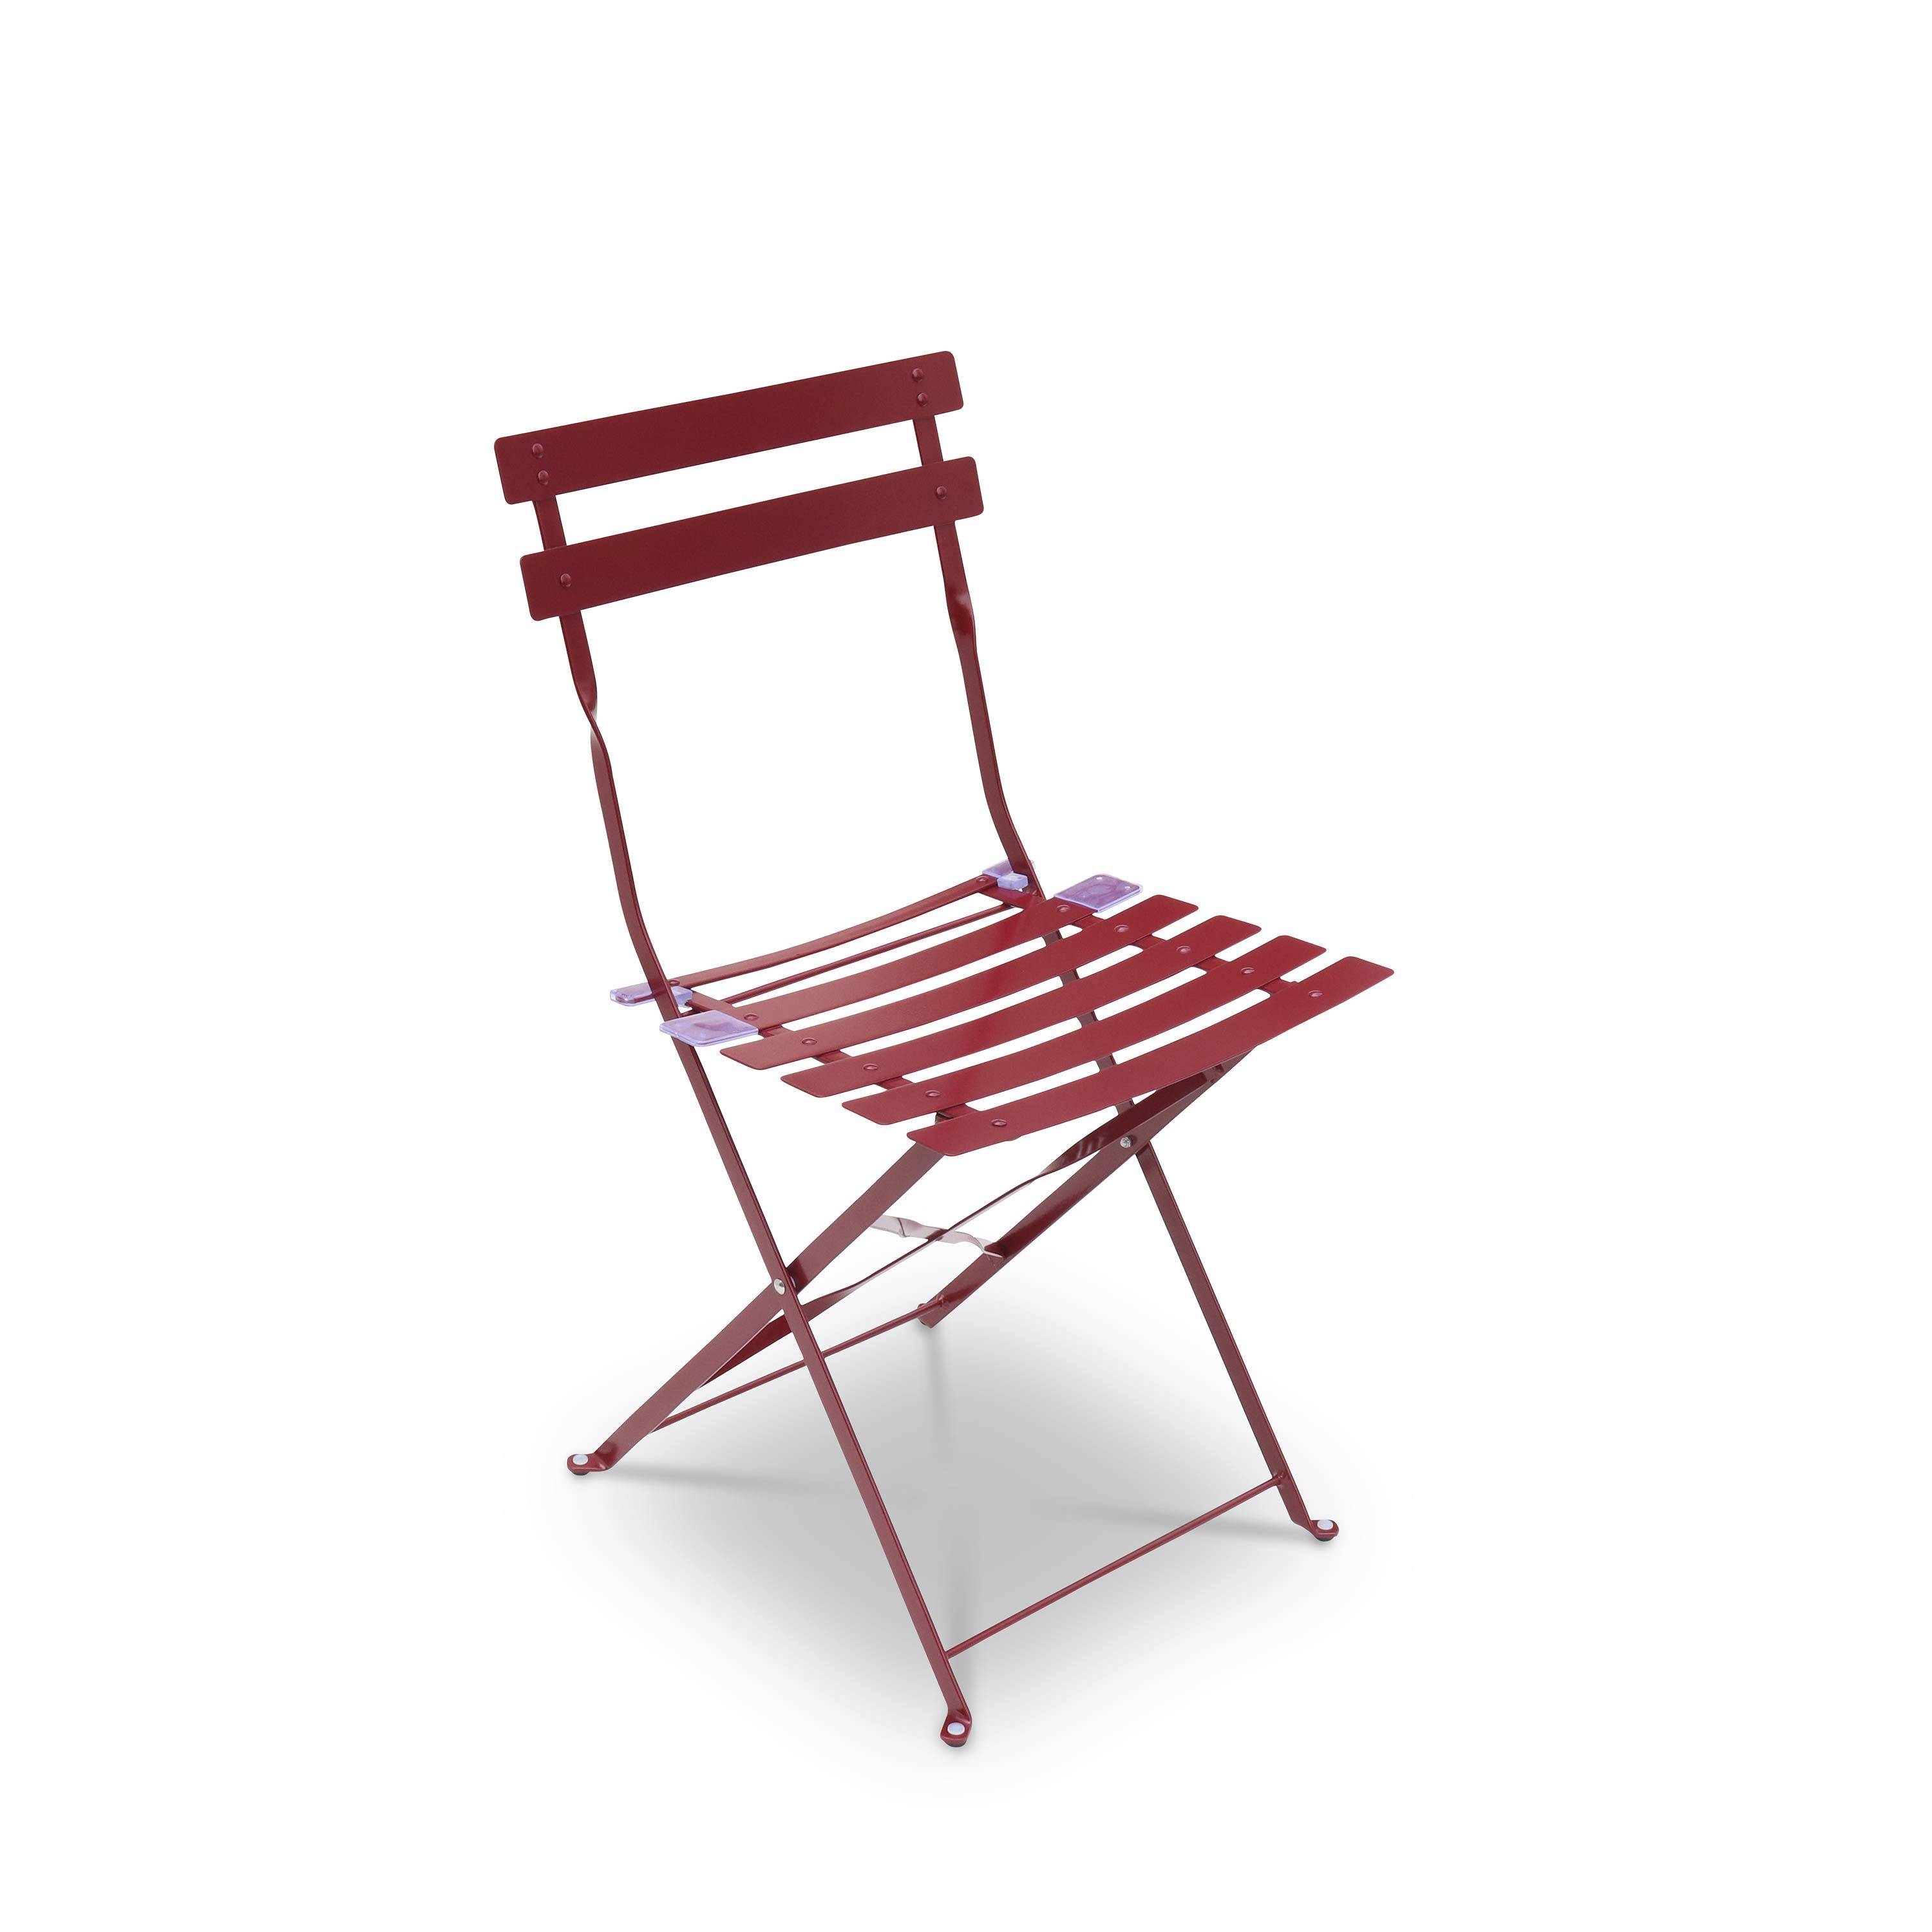 Tavolo da giardino, bar bistrot, pieghevole - modello: Emilia, rettangolare, colore: Bordeaux - Tavolo, dimensioni: 110x70cm, con quattro sedie pieghevoli, acciaio termolaccato Photo3